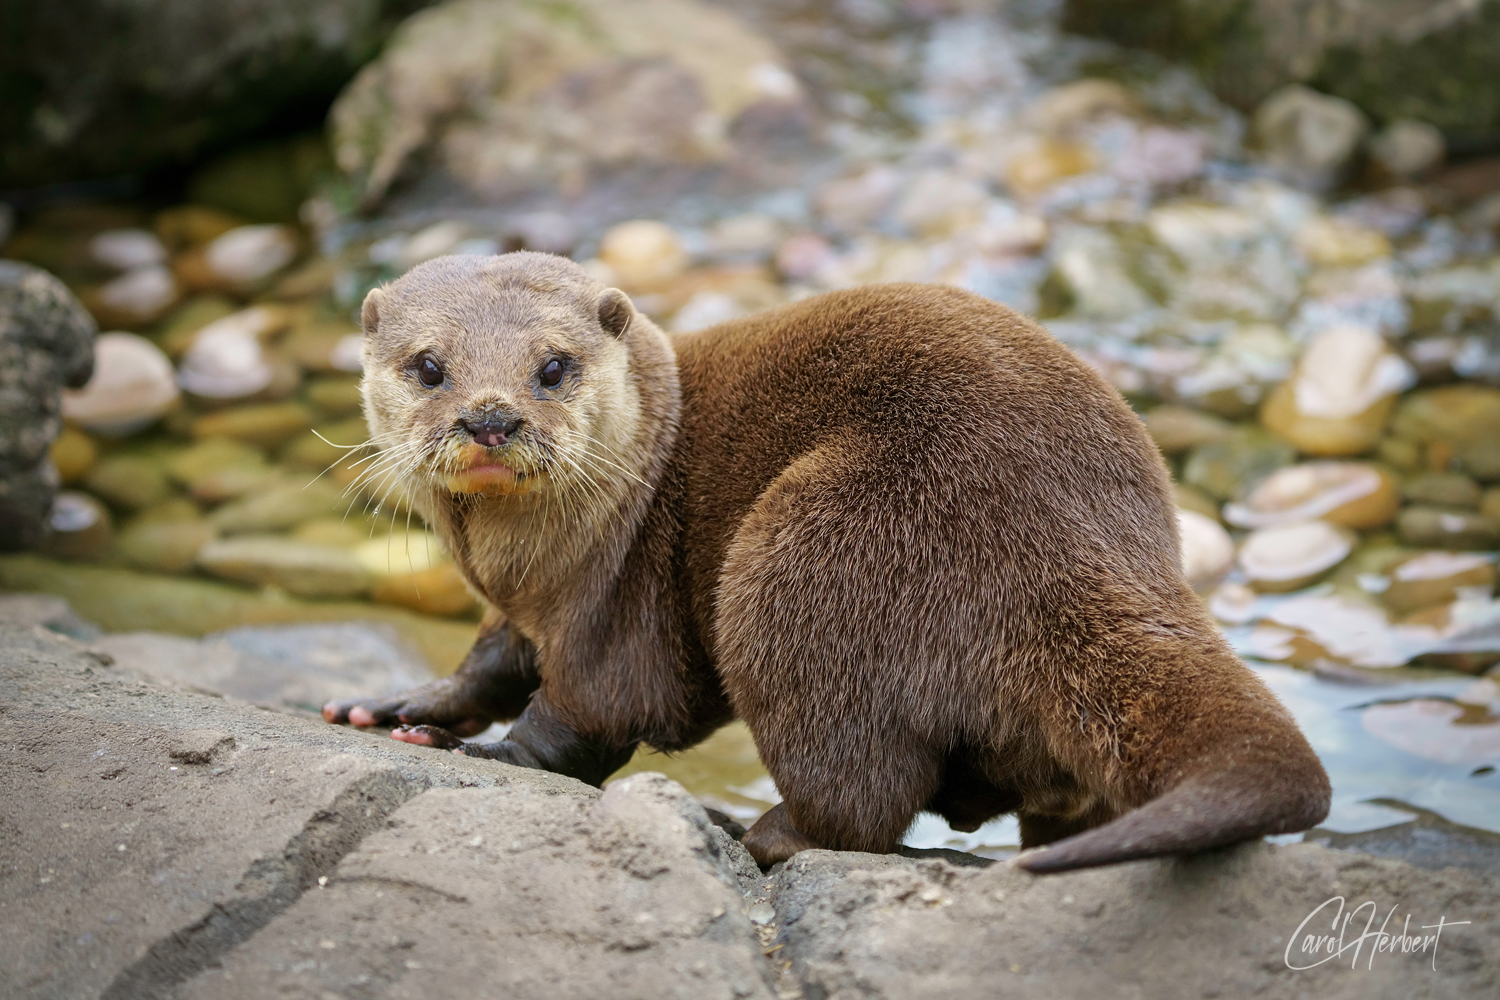 An Otter